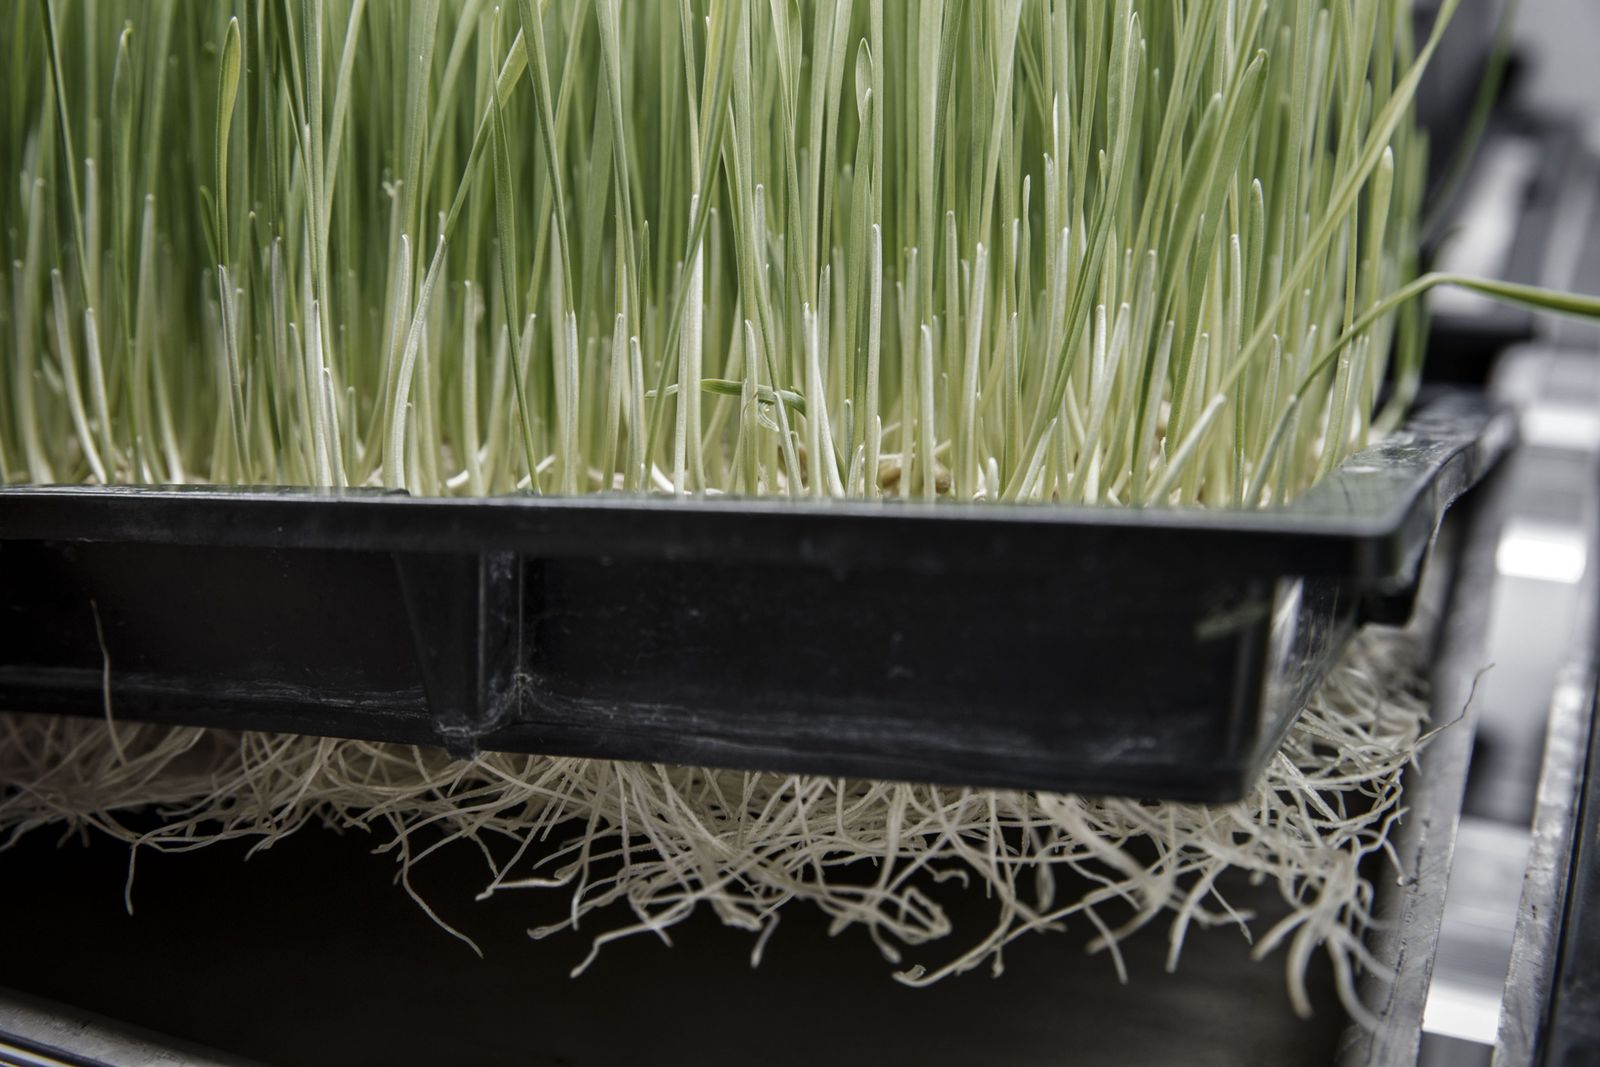 عشب القمح في وحدة زراعية عمودية تديرها شركة تكنولوجيا في بكين - 19 يناير 2017 - Bloomberg